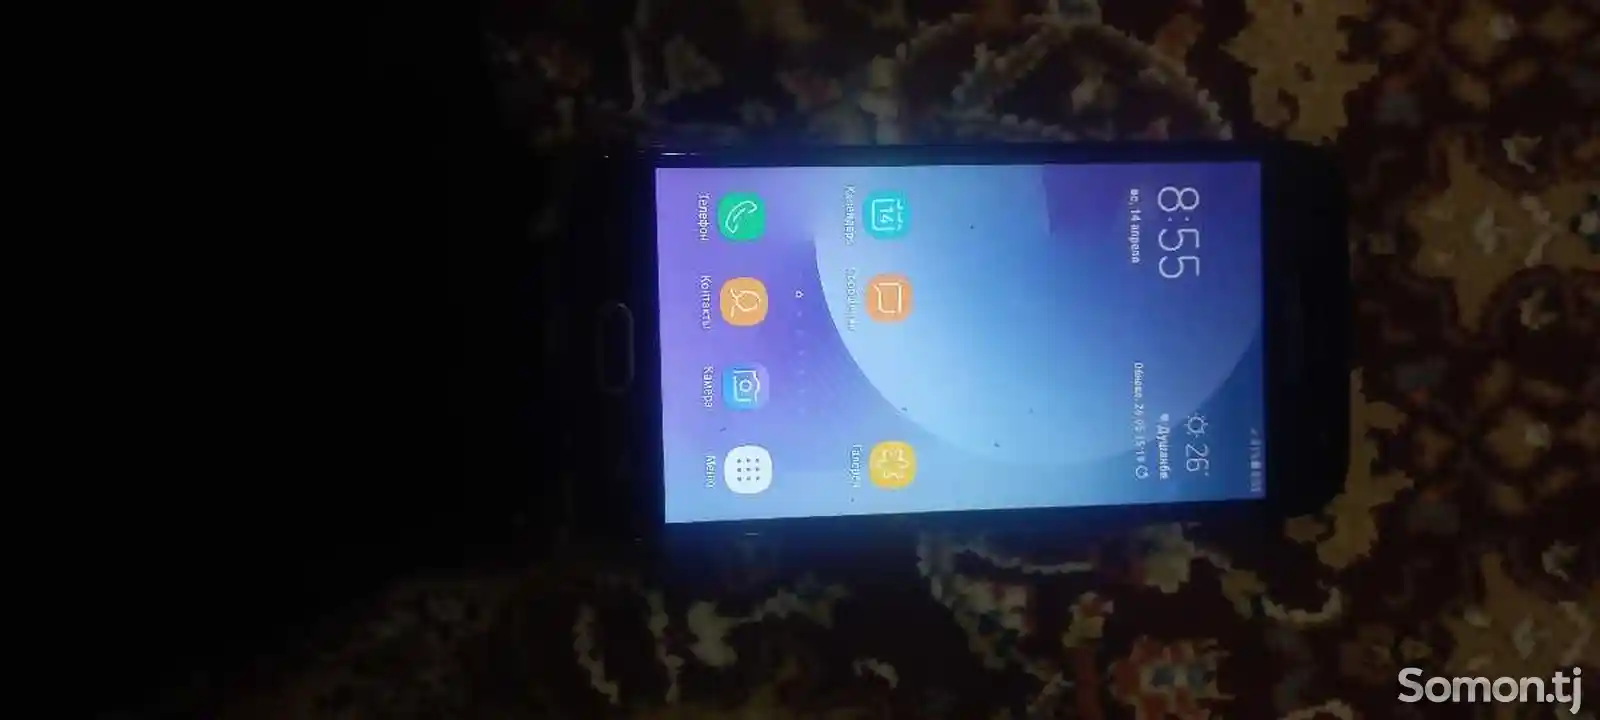 Samsung Galaxy J3-3